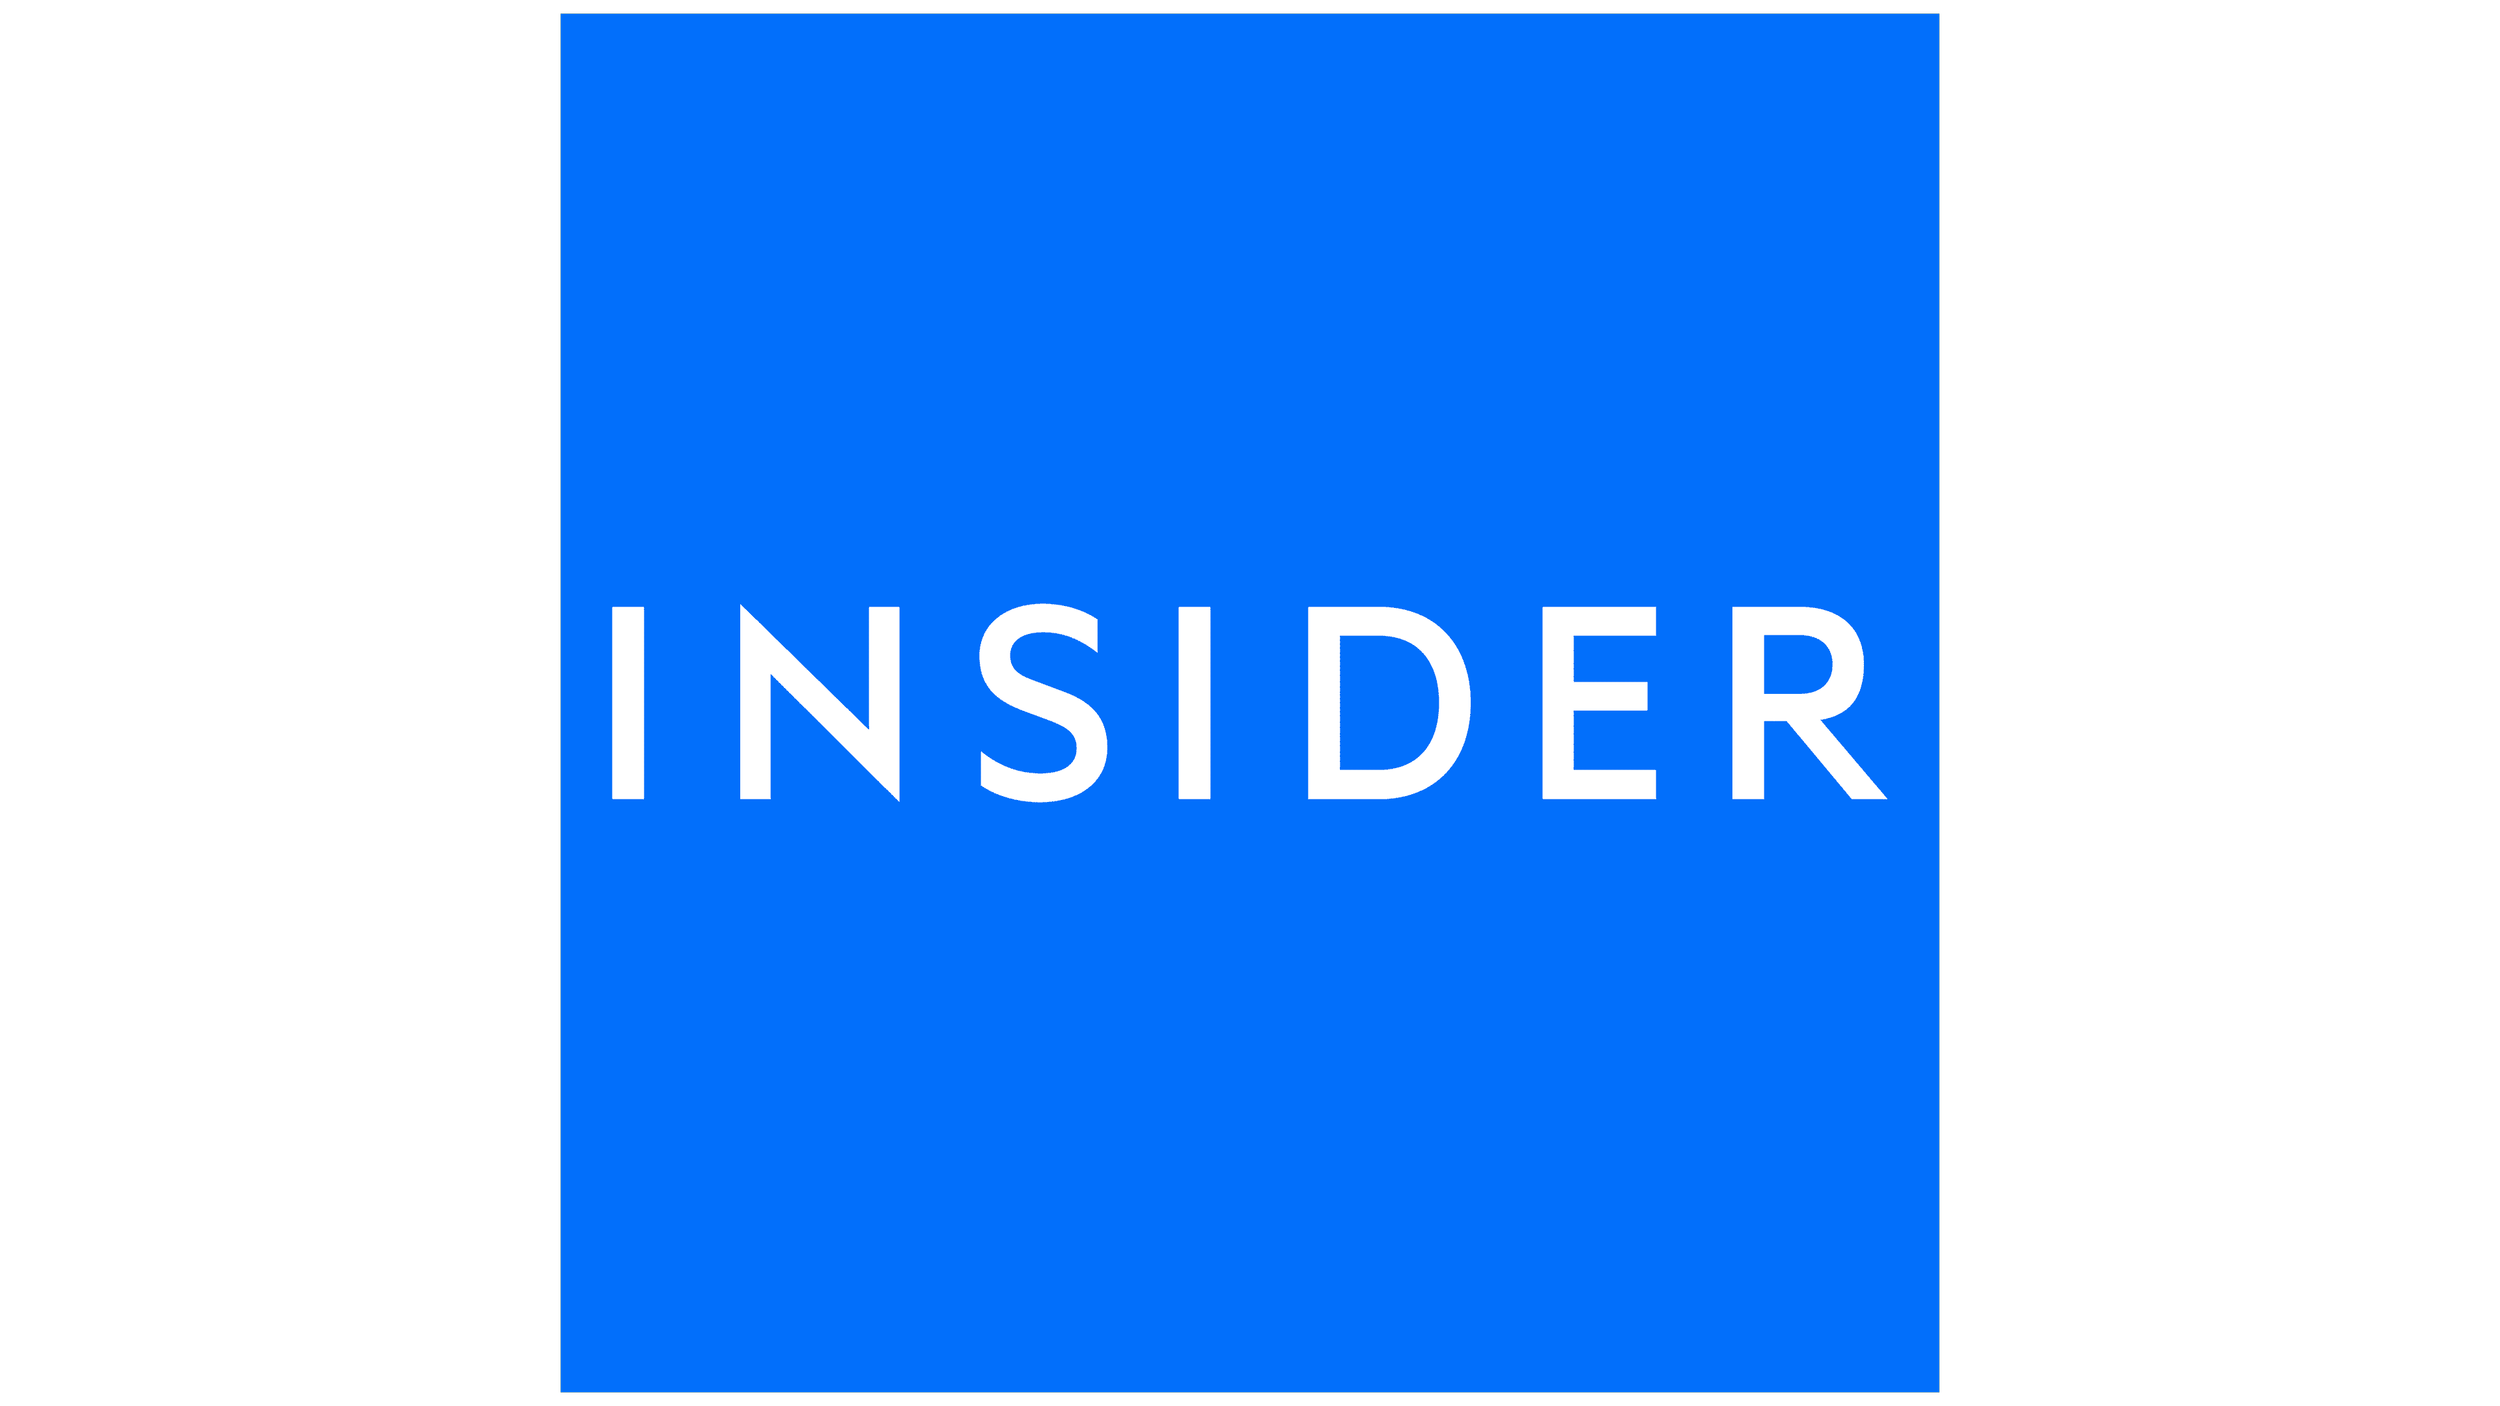 Insider-Emblem.png